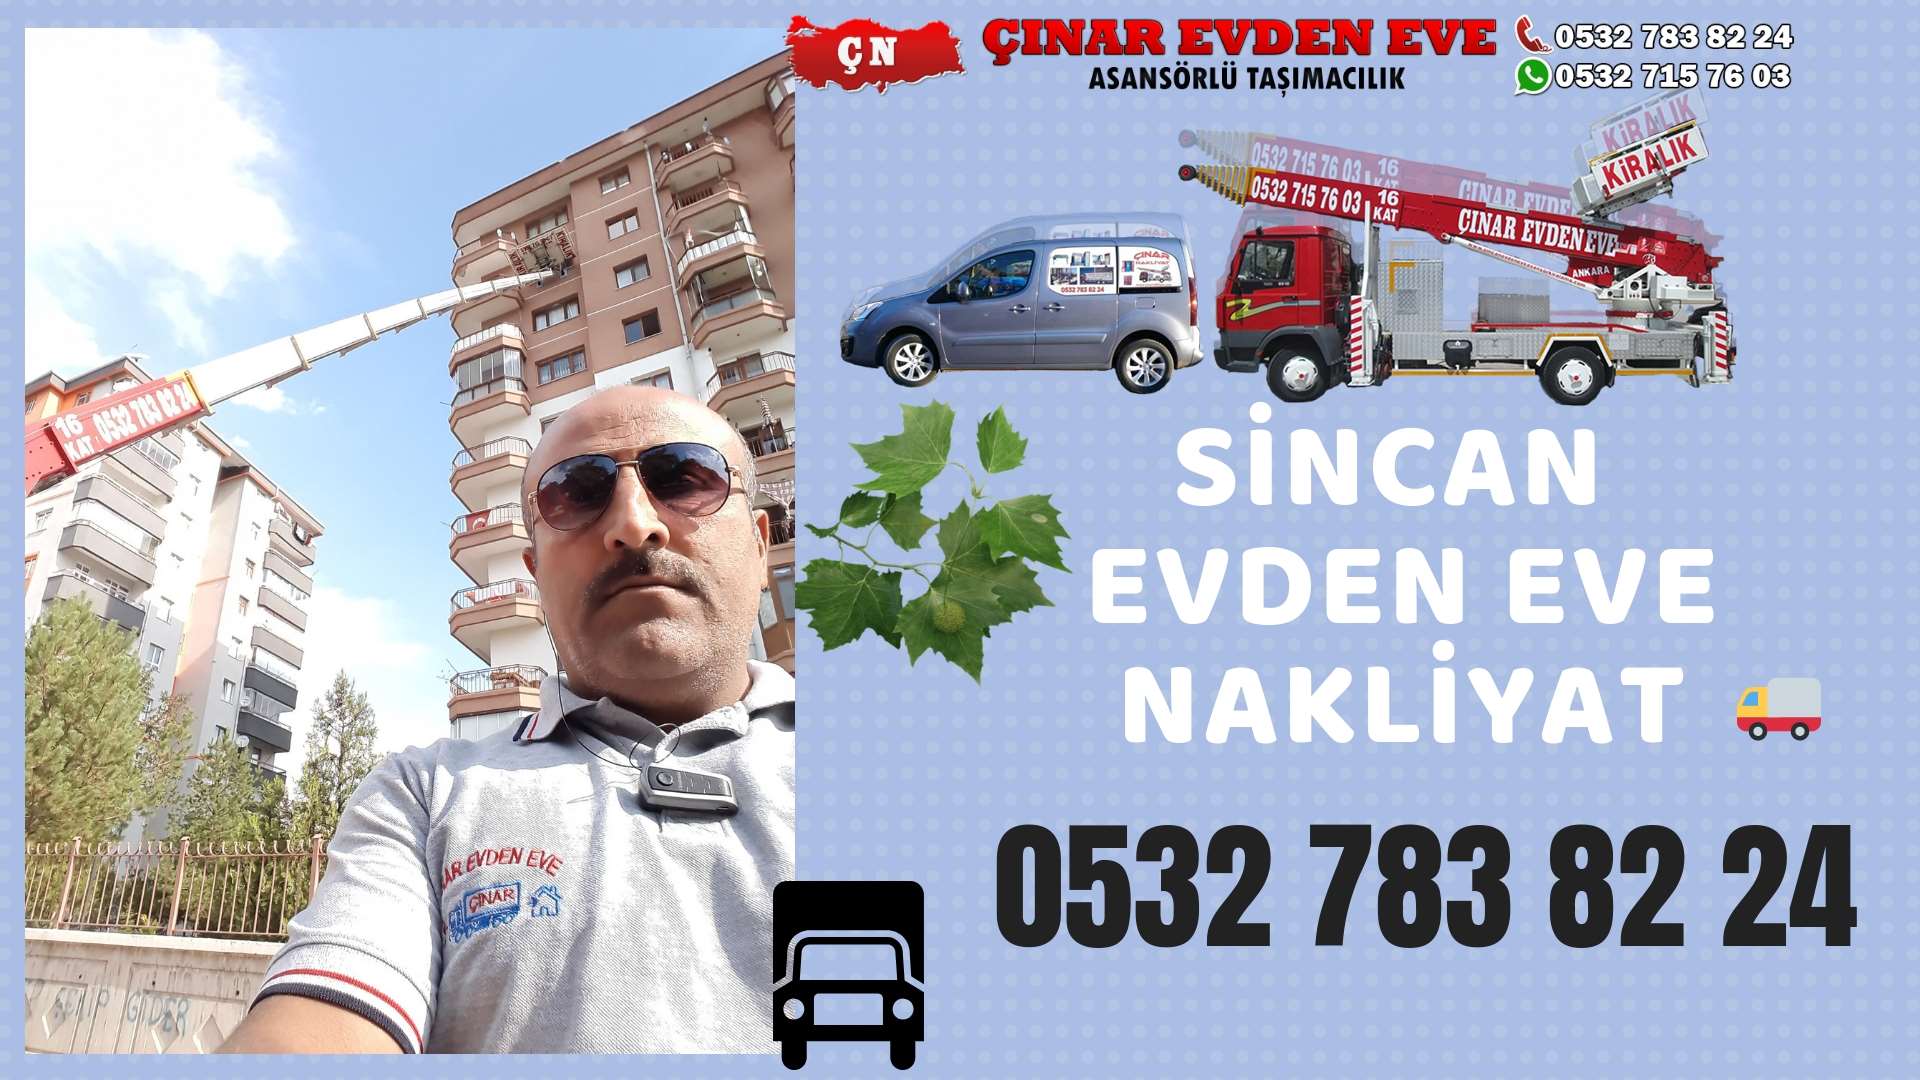 Ankara Elmadağ Evden Eve Nakliyat, Asansörlü Taşımacılık, Ofis / İş Yeri Taşıma 0532 715 76 03